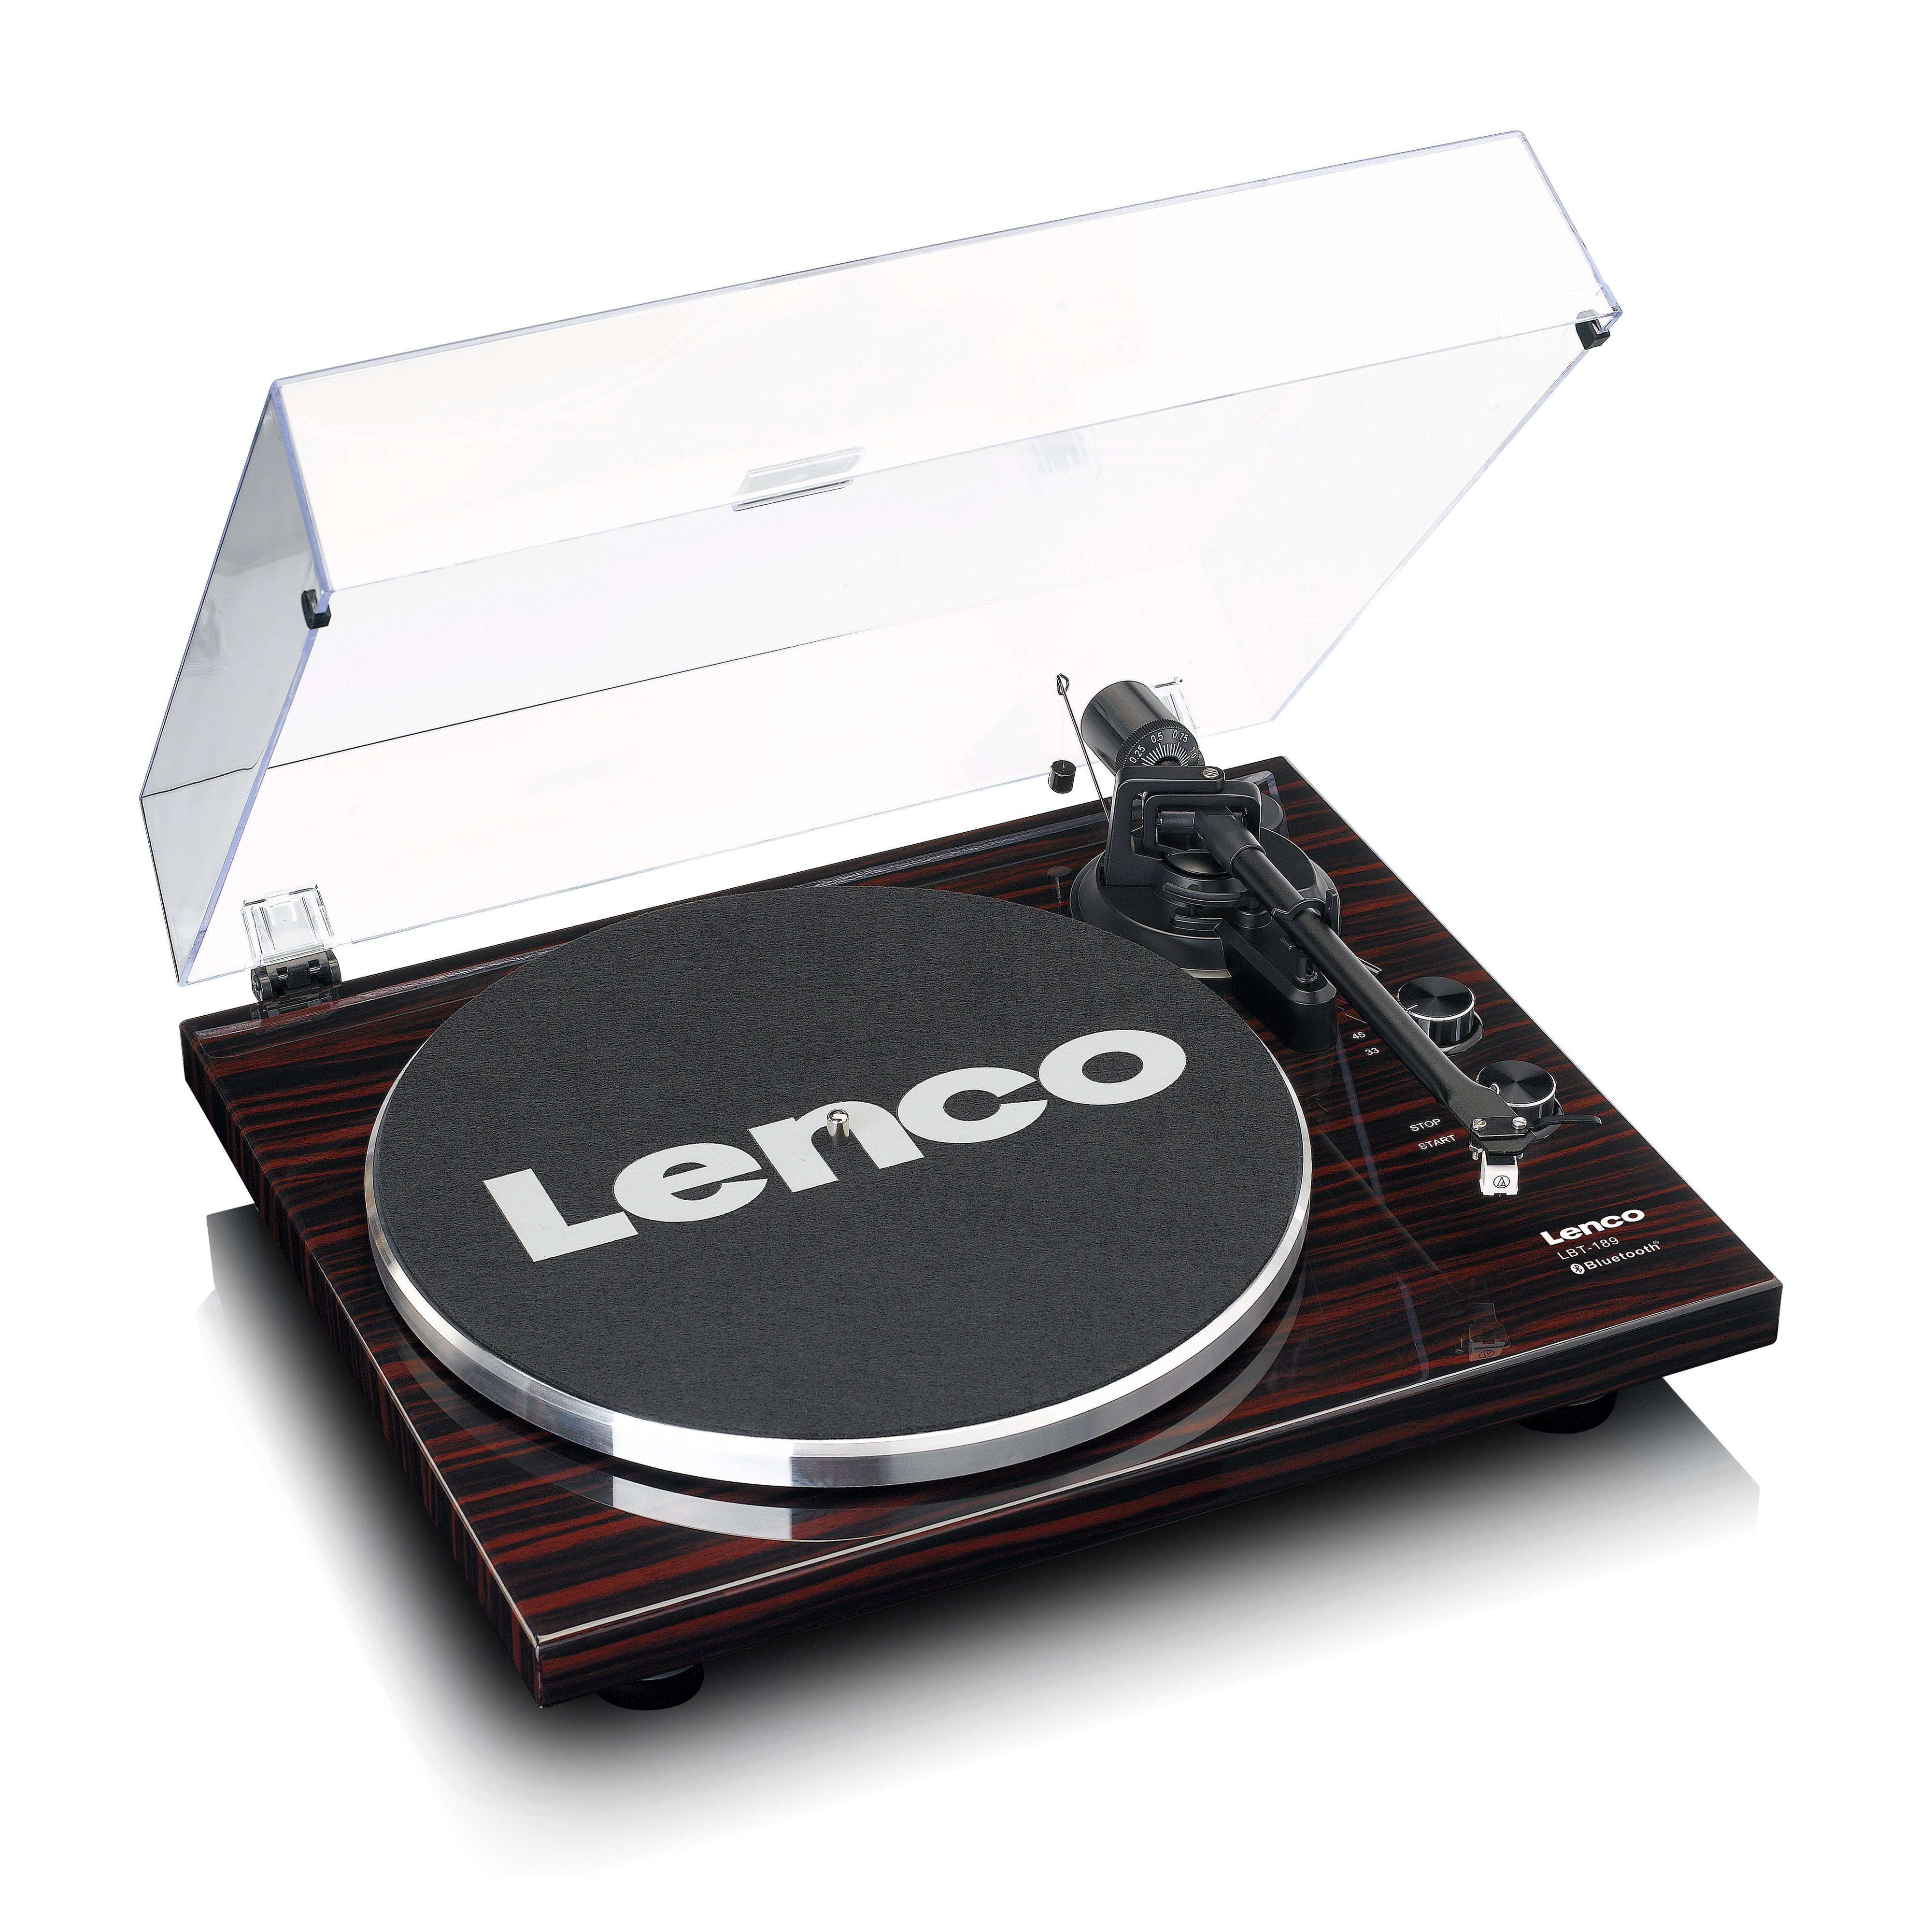 Umwandlung Vinyl USB-Anschluss Plattenspieler (Riemenantrieb, PC-Verbindung Lenco Bluetooh), LBT-189WA in für von zur MP3